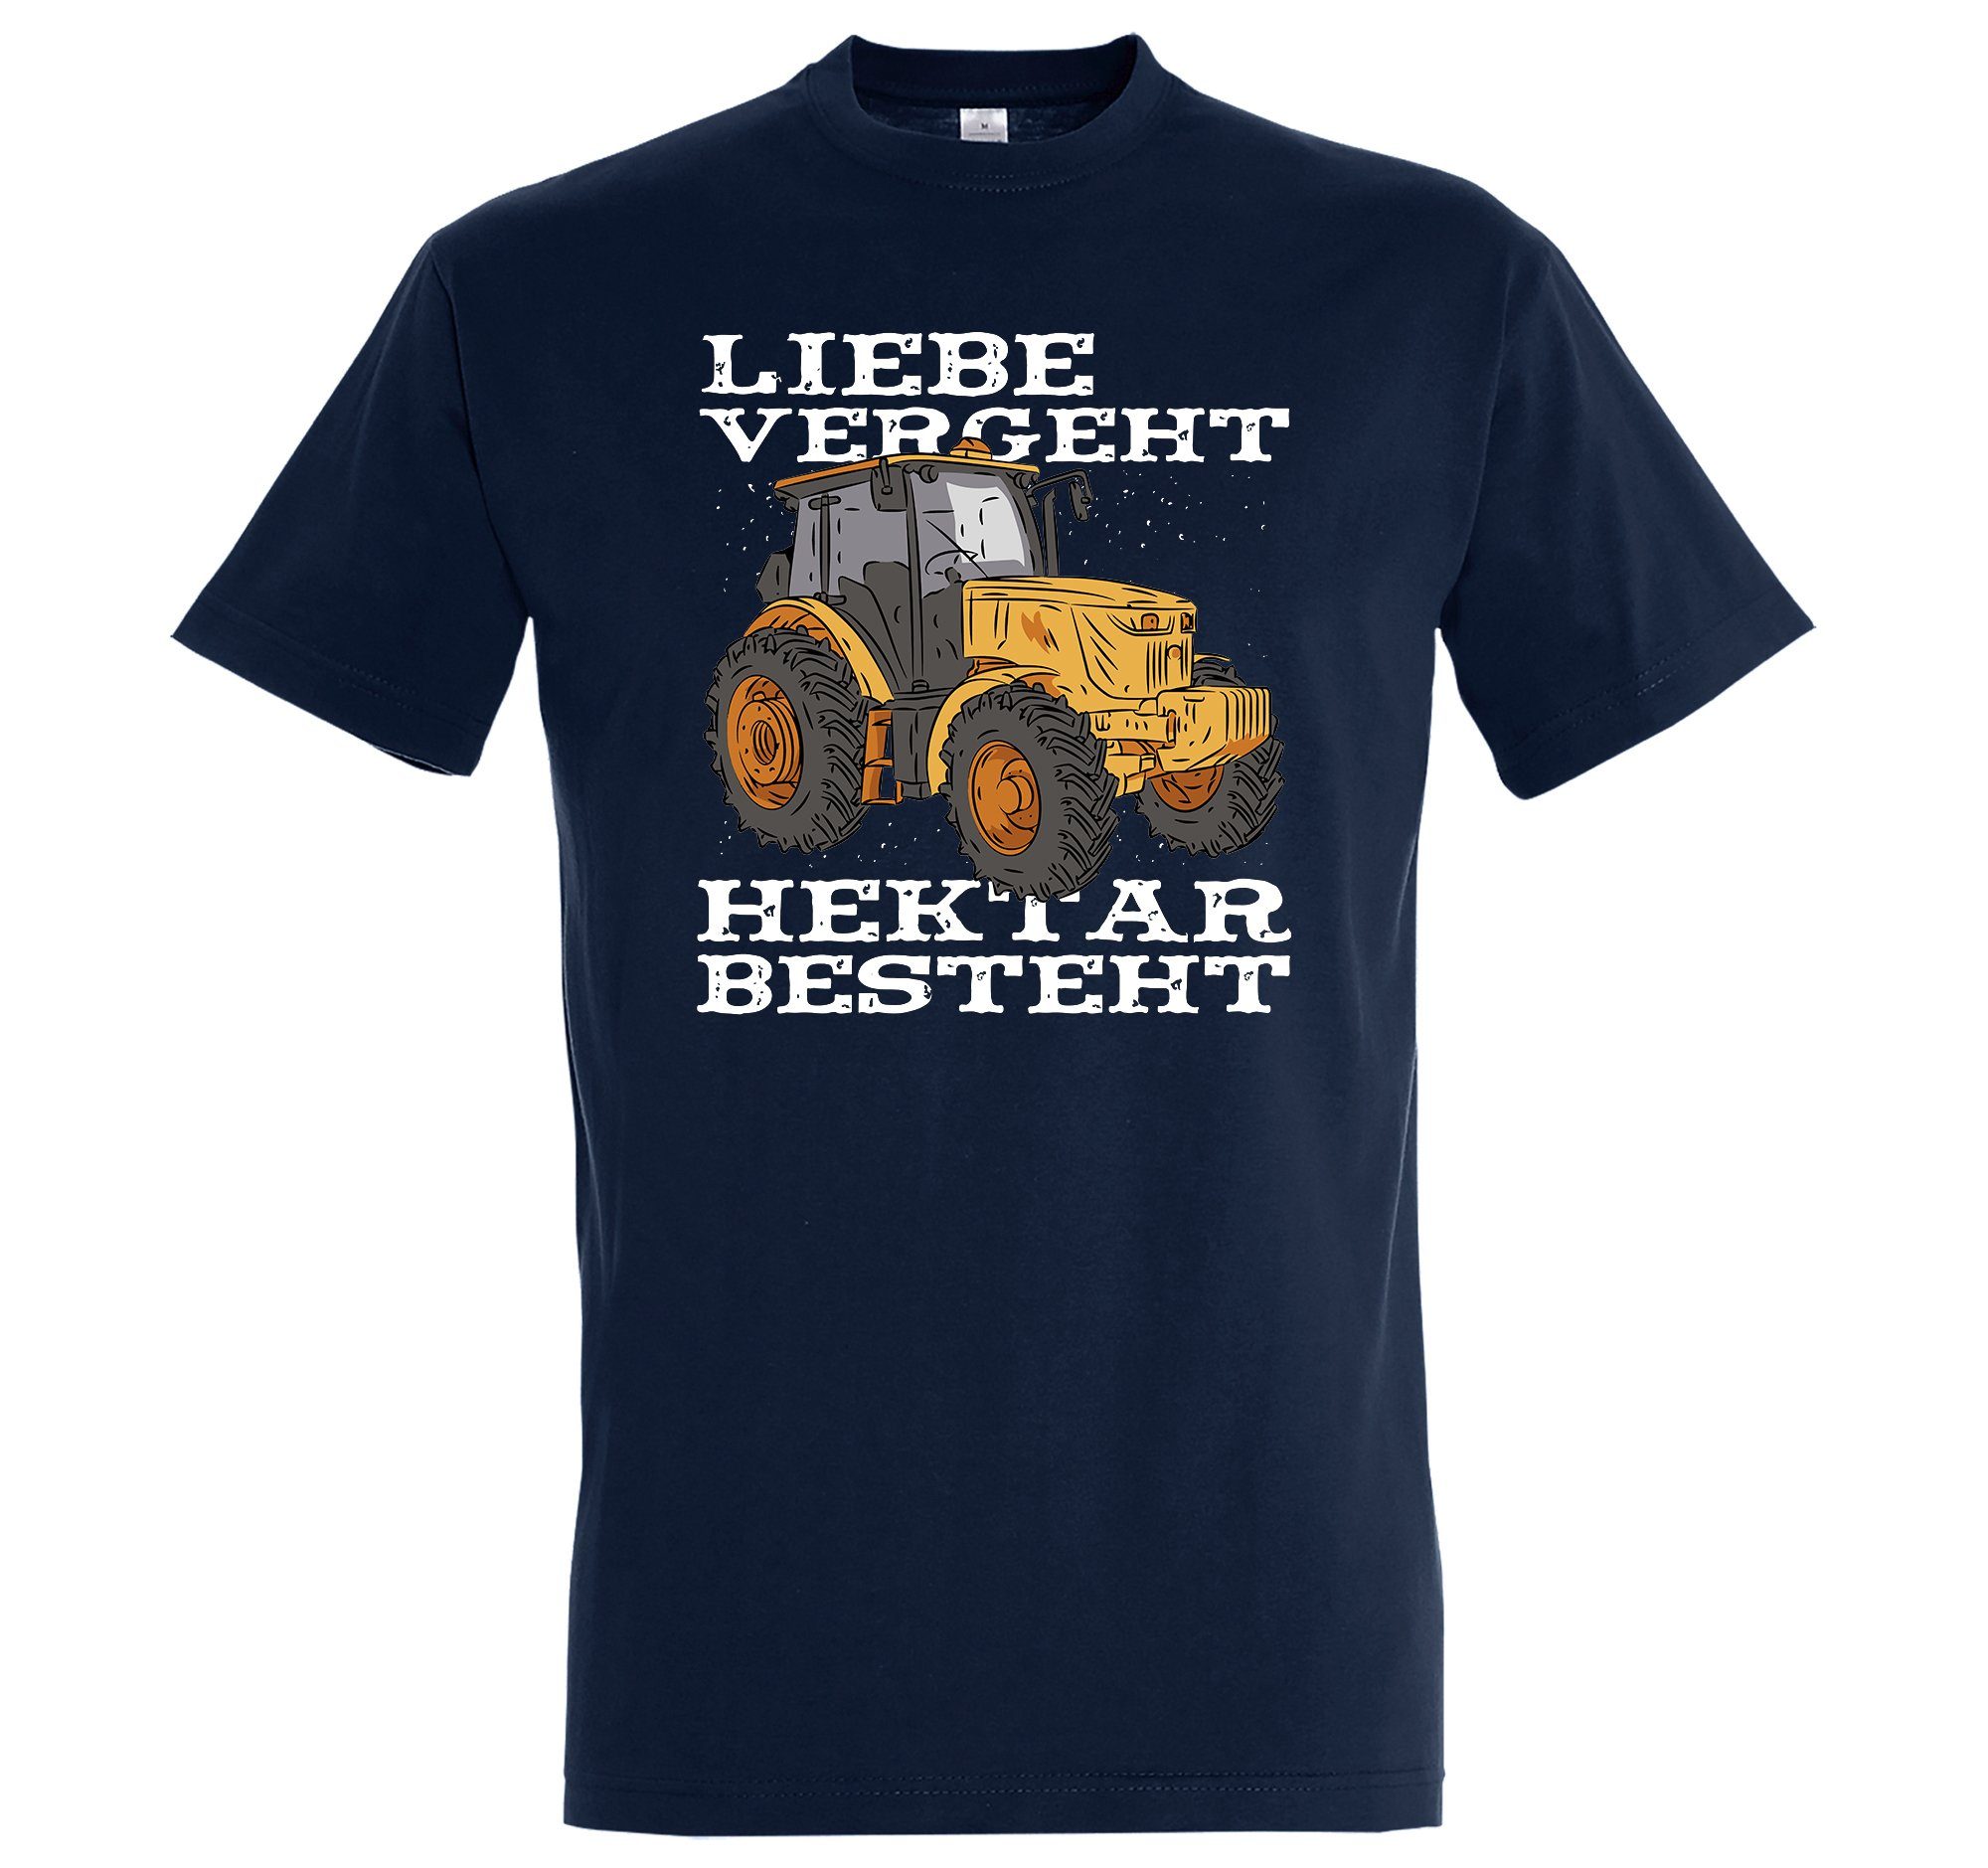 Youth Designz T-Shirt "Liebe Vergeht, Liebe Besteht" Herren Shirt mit trendigem Frontprint Navyblau